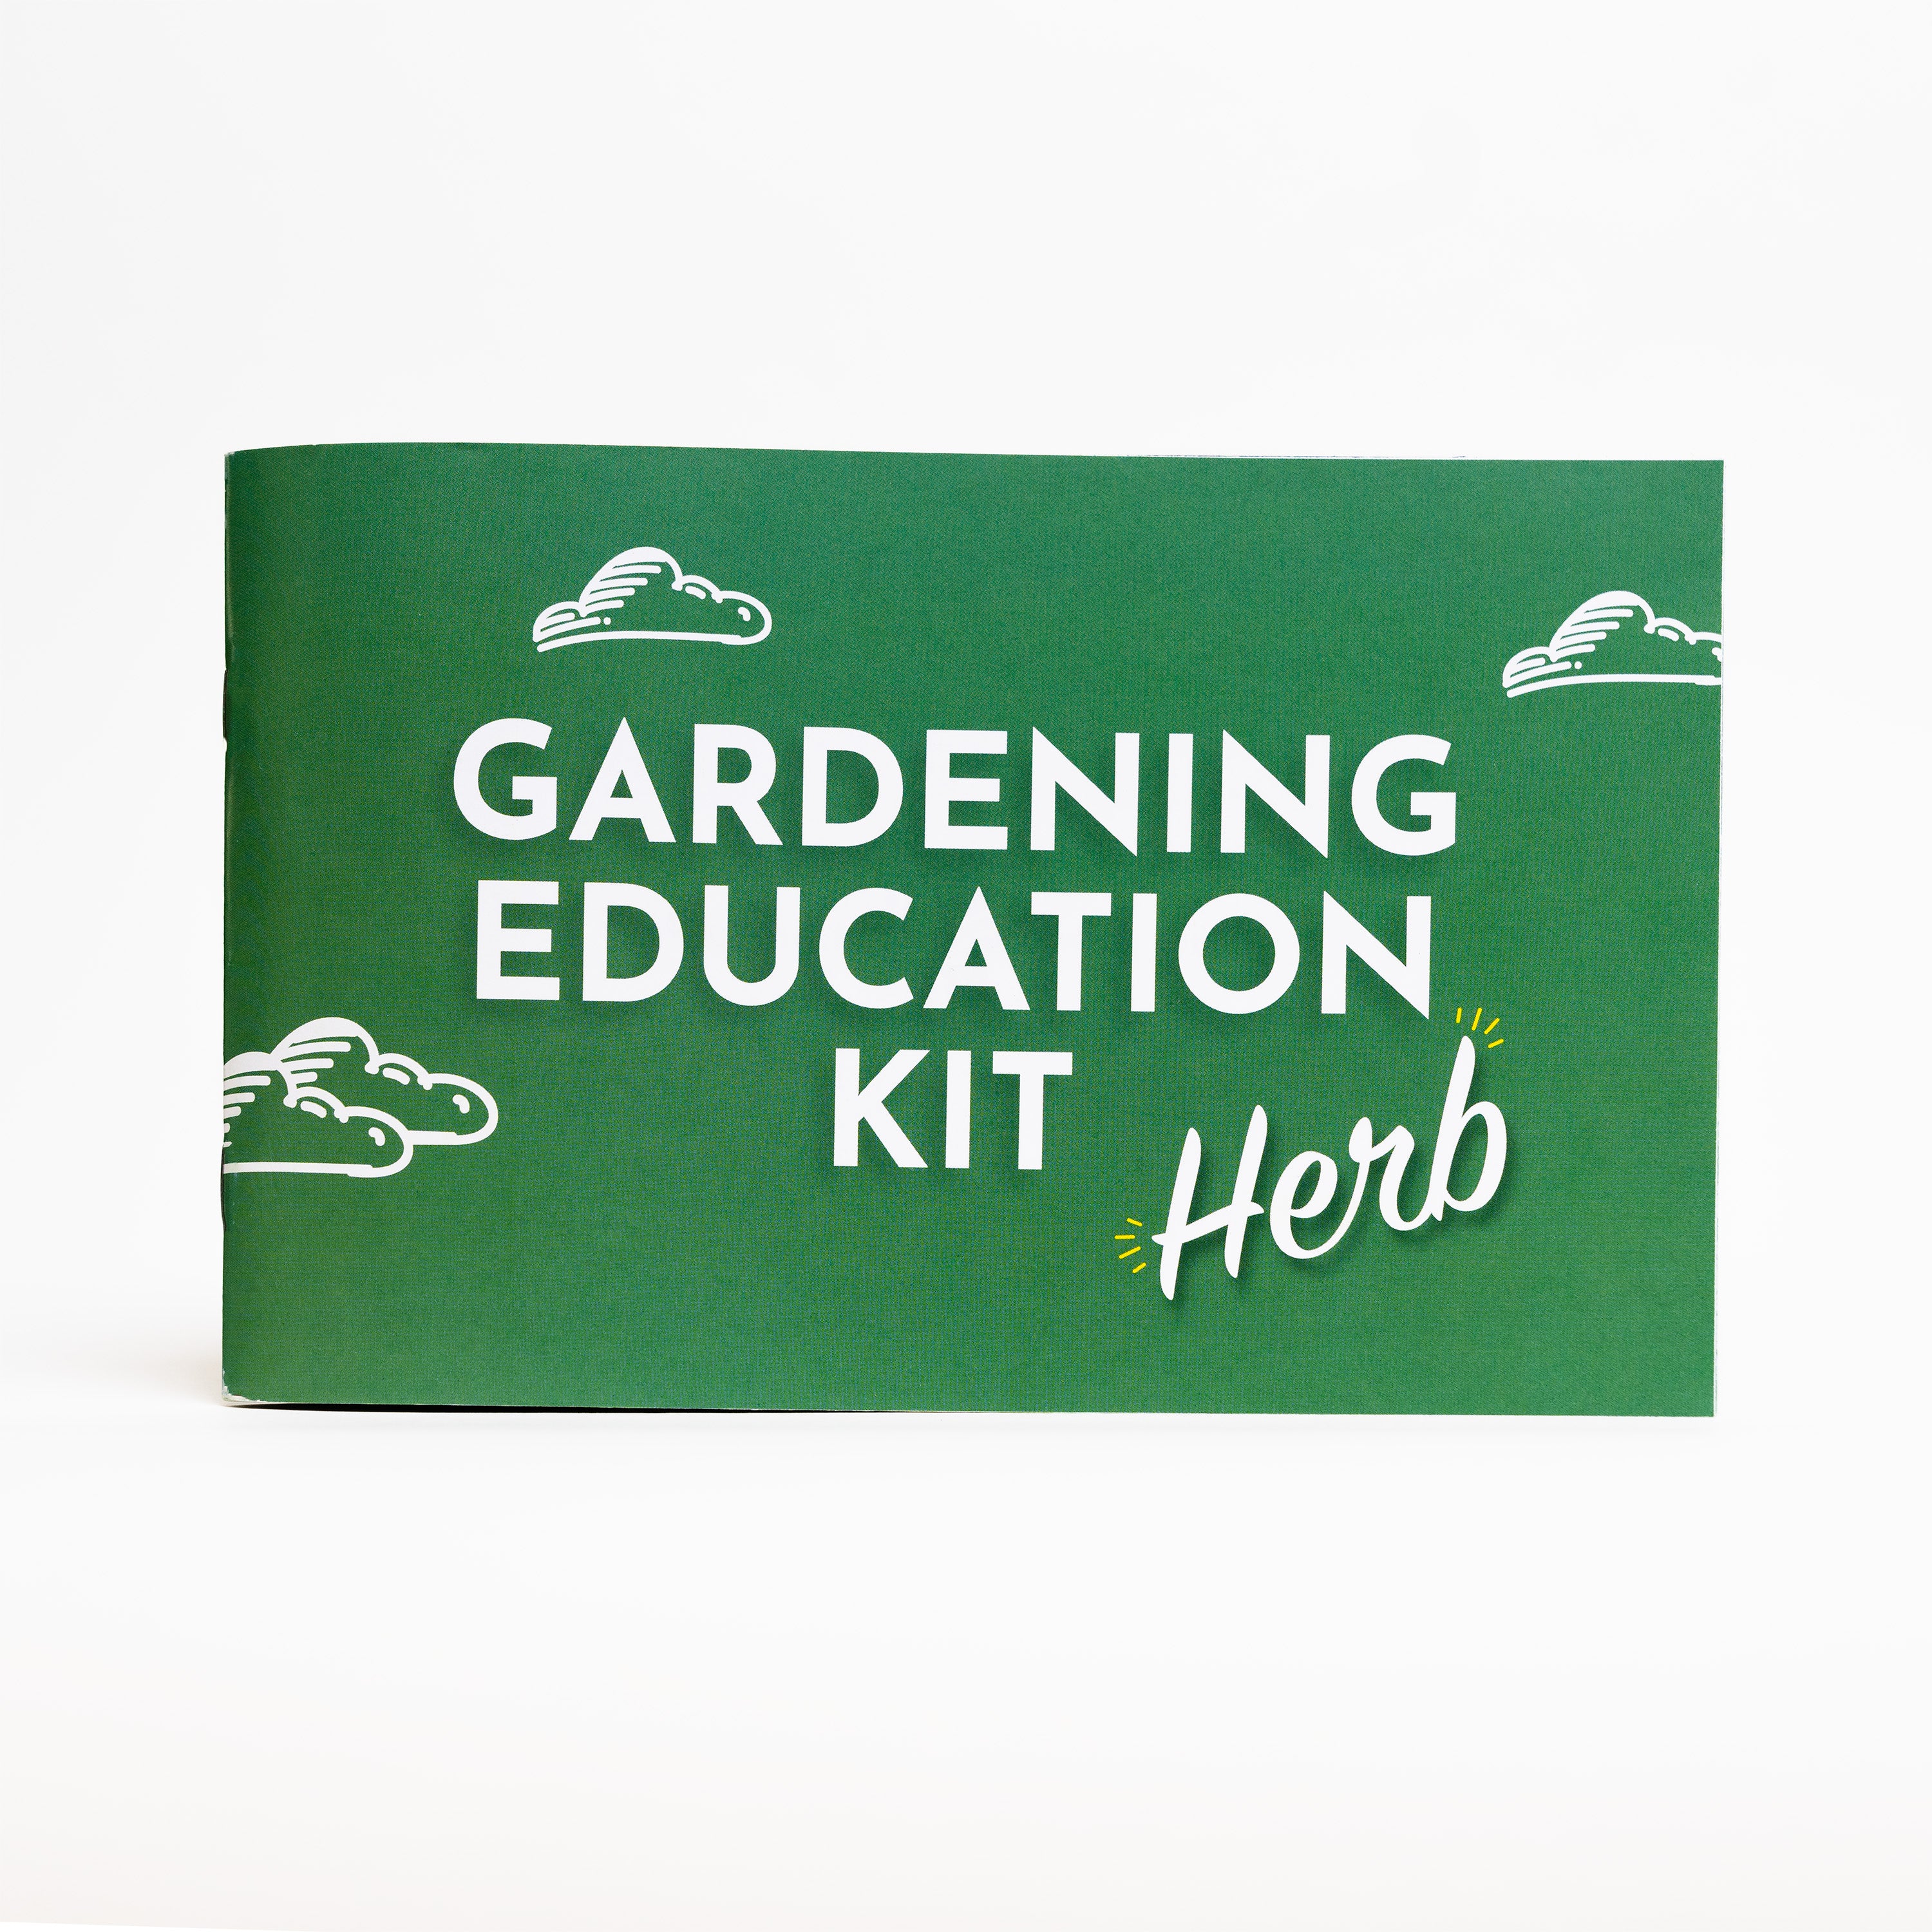 Herb Gardening Education Seed Kit